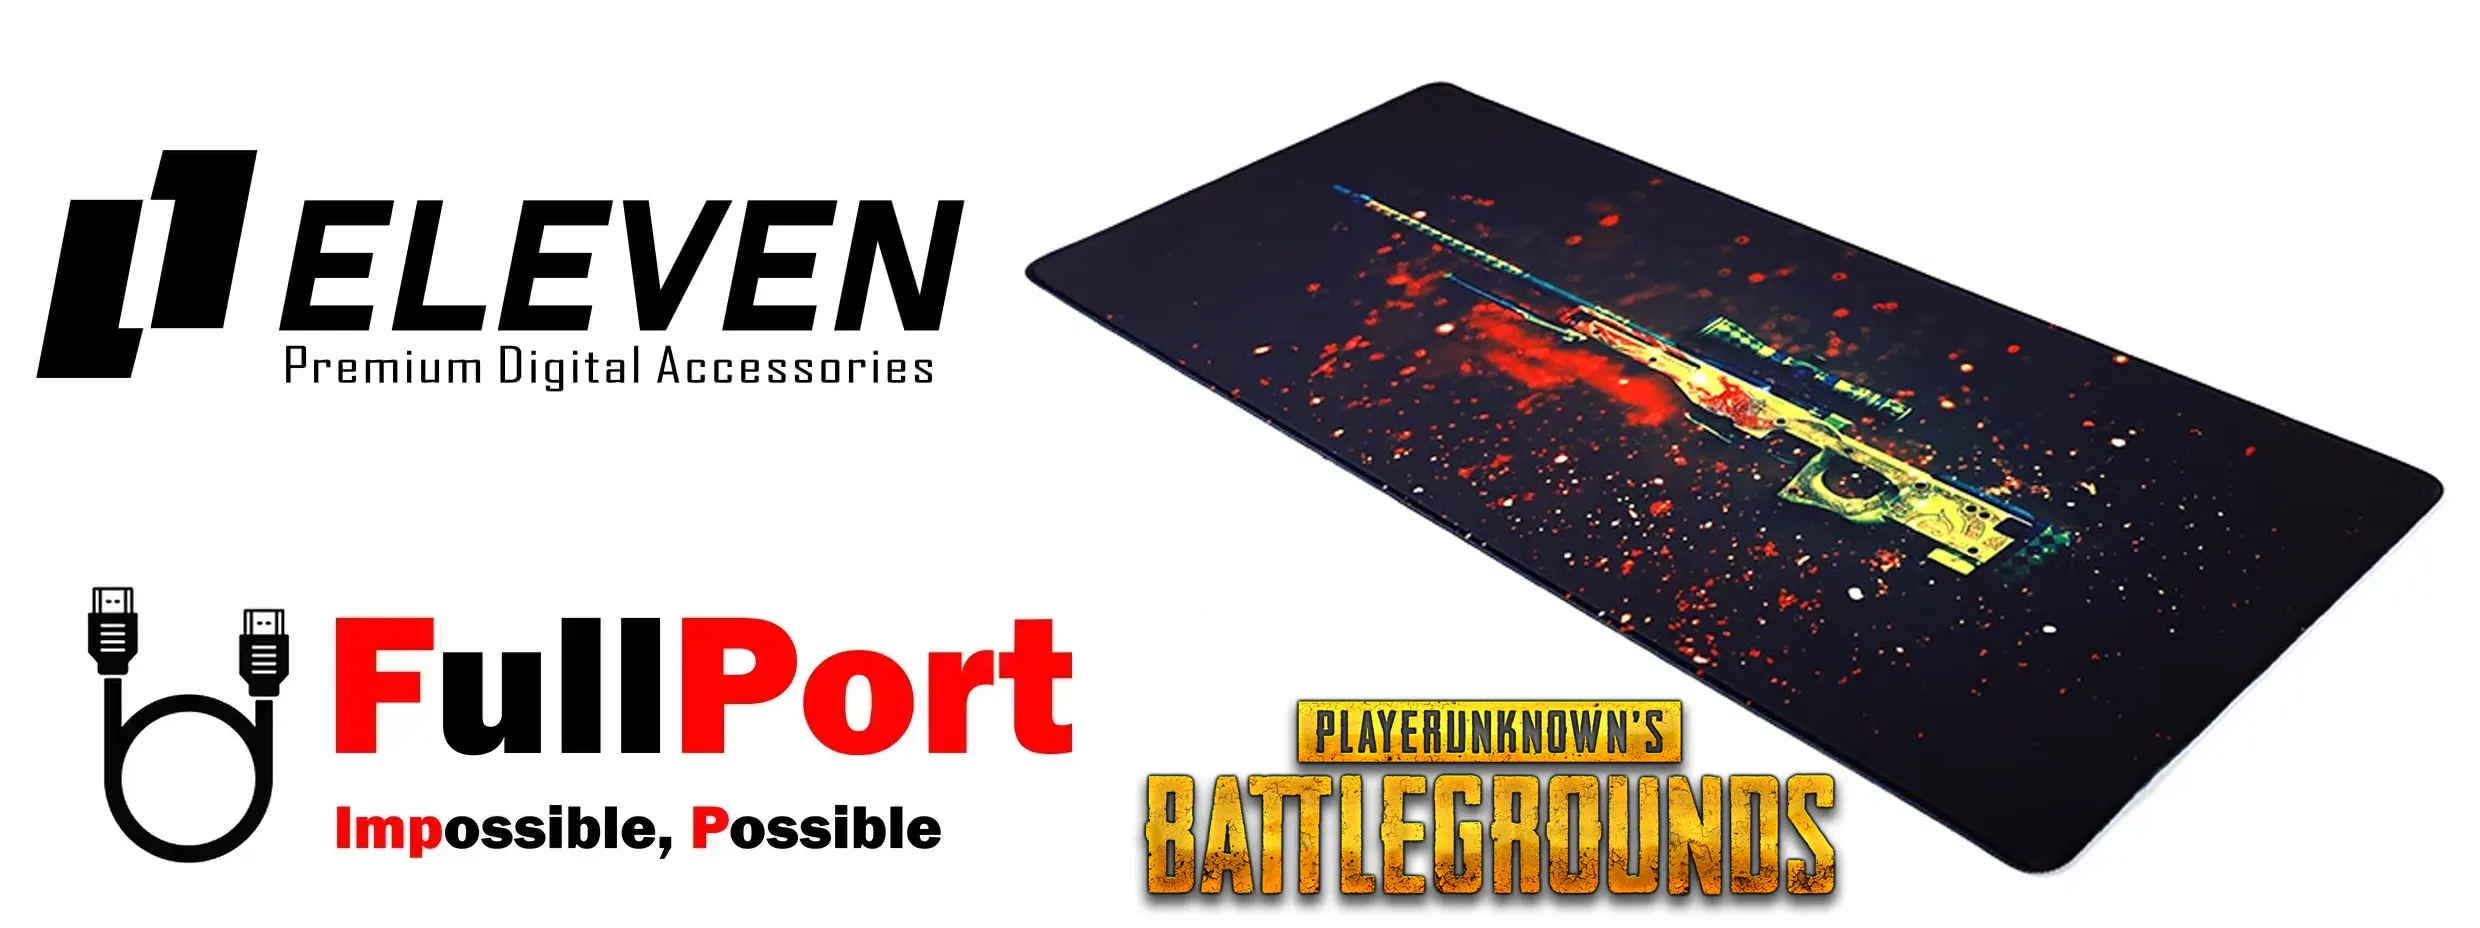 خرید اینترنتی پدموس مخصوص بازی | Gameing ایلون | ELEVEN مدل GMP3070 طرح Battlegrounds AK47 M4A4 For Rainbow Six از فروشگاه اینترنتی فول پورت